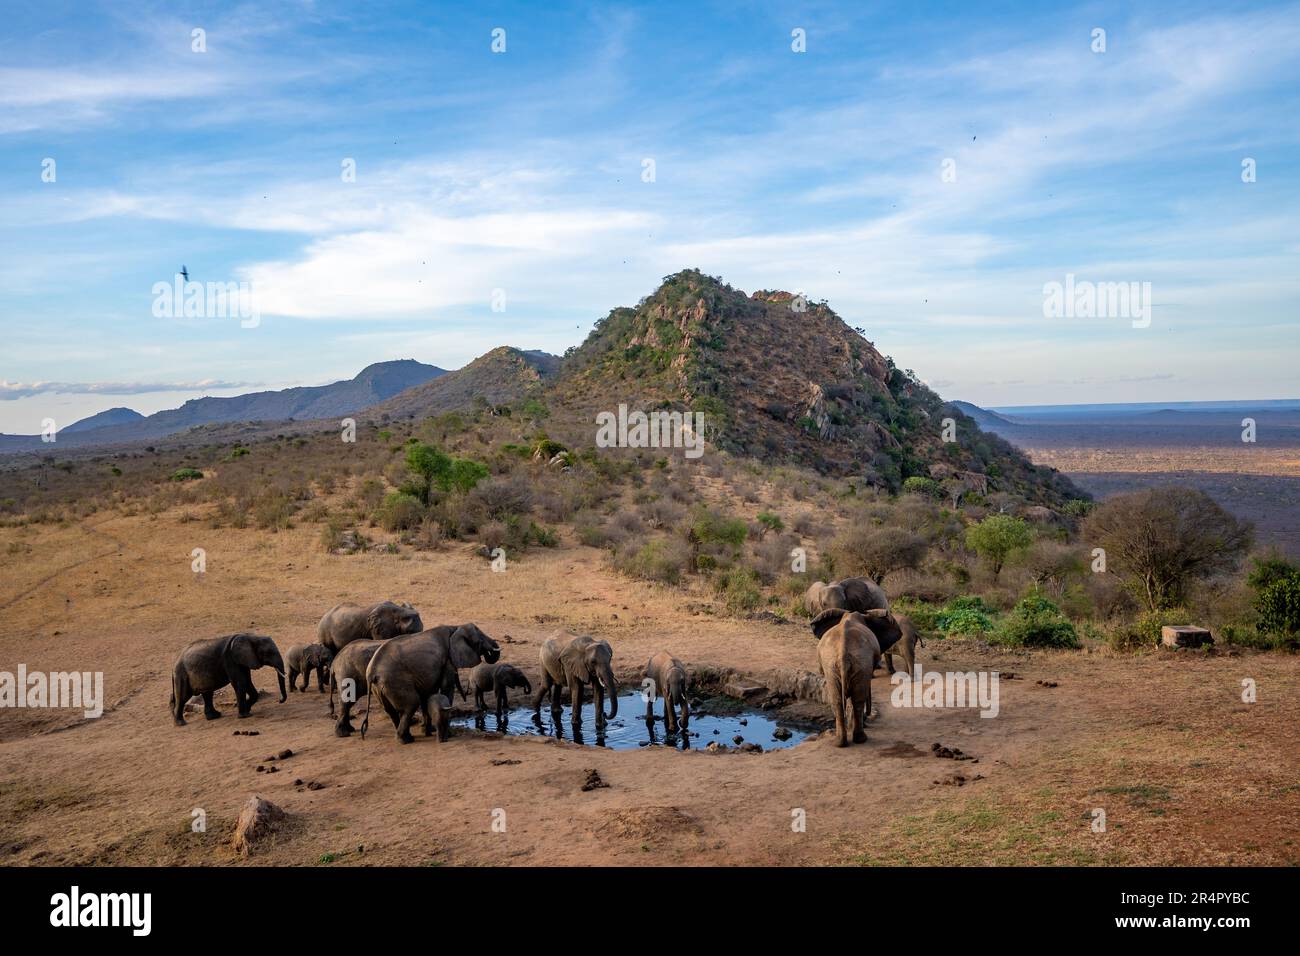 Un groupe familial d'éléphants d'Afrique (Loxodonta africana) qui boivent dans un trou d'eau. Kenya, Afrique. Banque D'Images